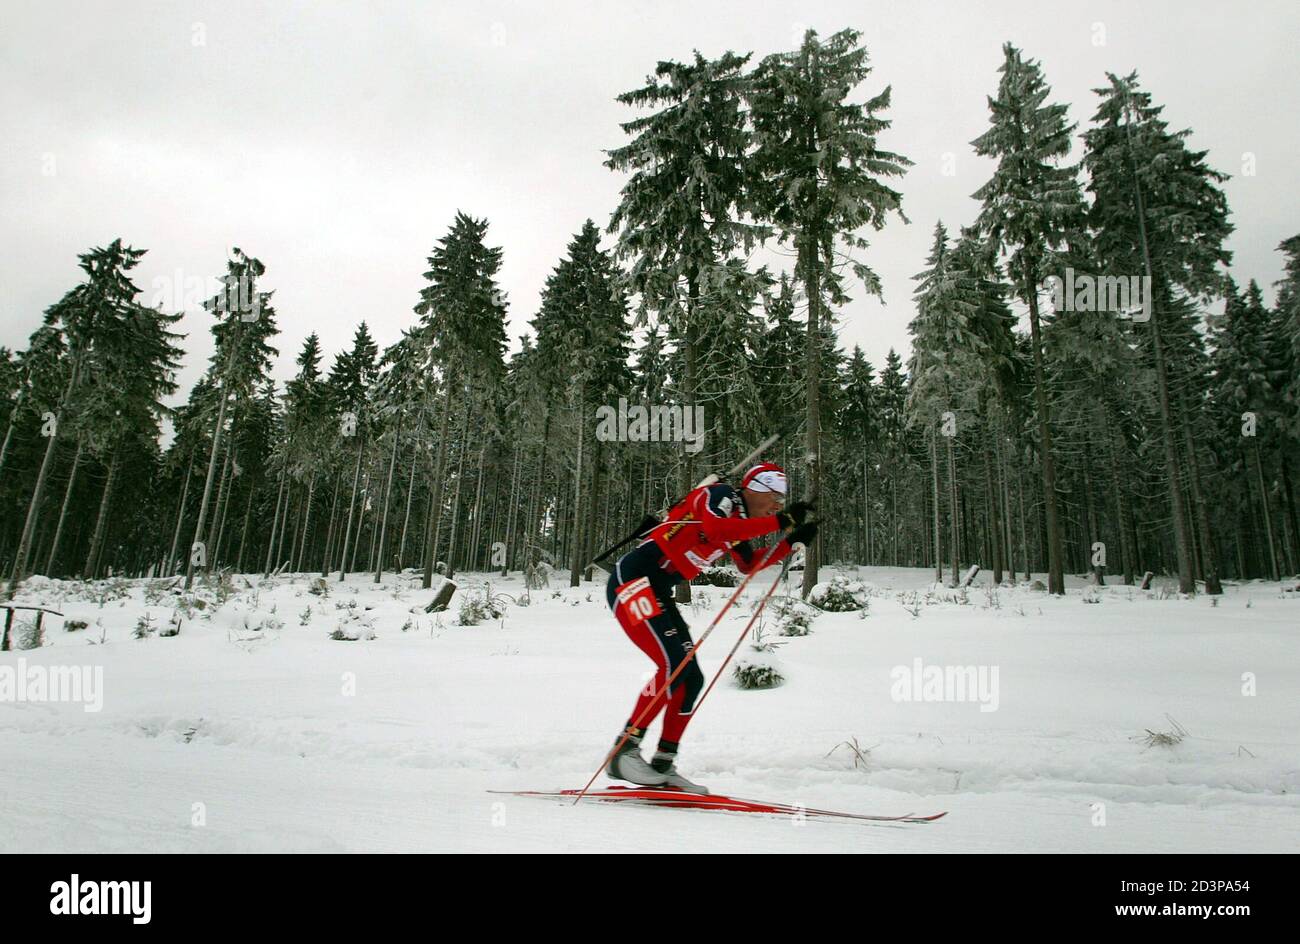 FRANZÖSISCHE BIATHLETIN RAPHAEL POIREE SKI GOLDMEDAILLE IN DIE MÄNNER 20 KM  EINZELRENNEN BEI DEN BIATHLON-WELTMEISTERSCHAFTEN IN OBERHOF. Französische  Biathletin Raphael Poiree Ski gewinnt die Goldmedaille im Herren 20 km  Einzelrennen bei den